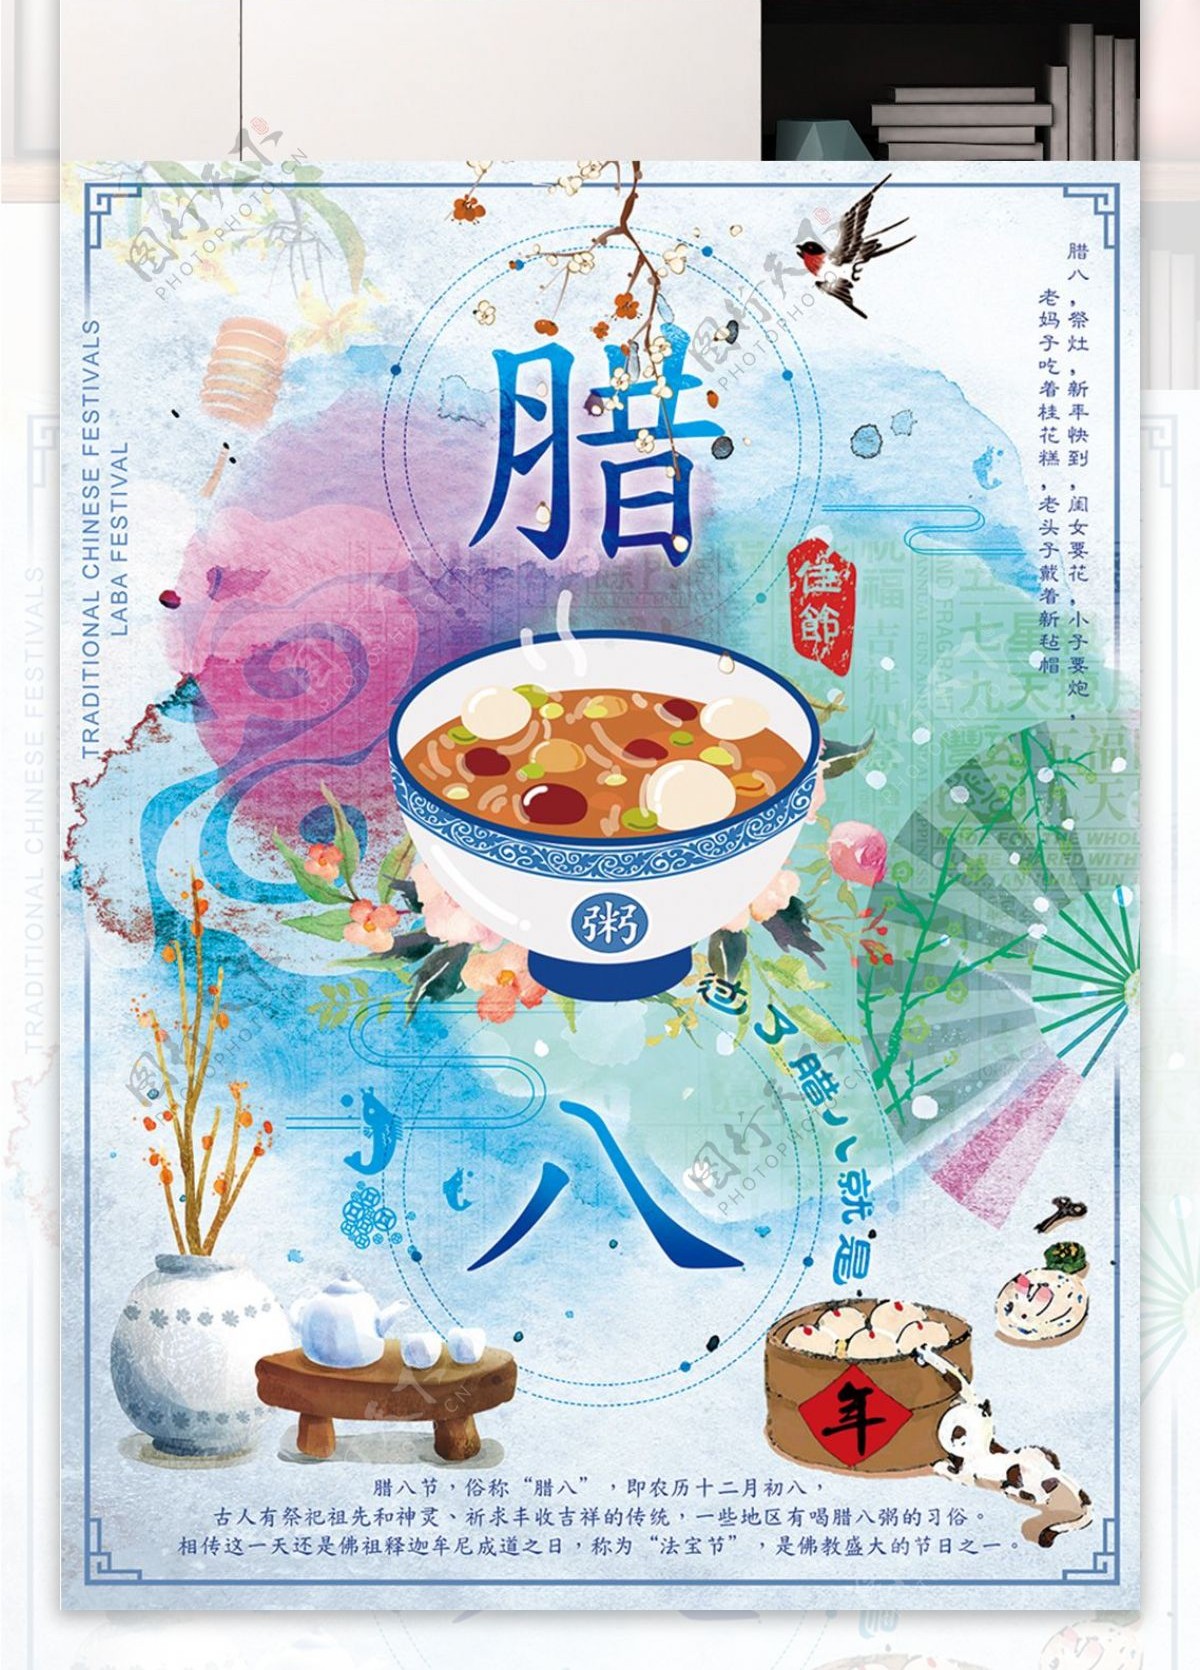 腊八节年货节法宝节中国传统节日宣传海报